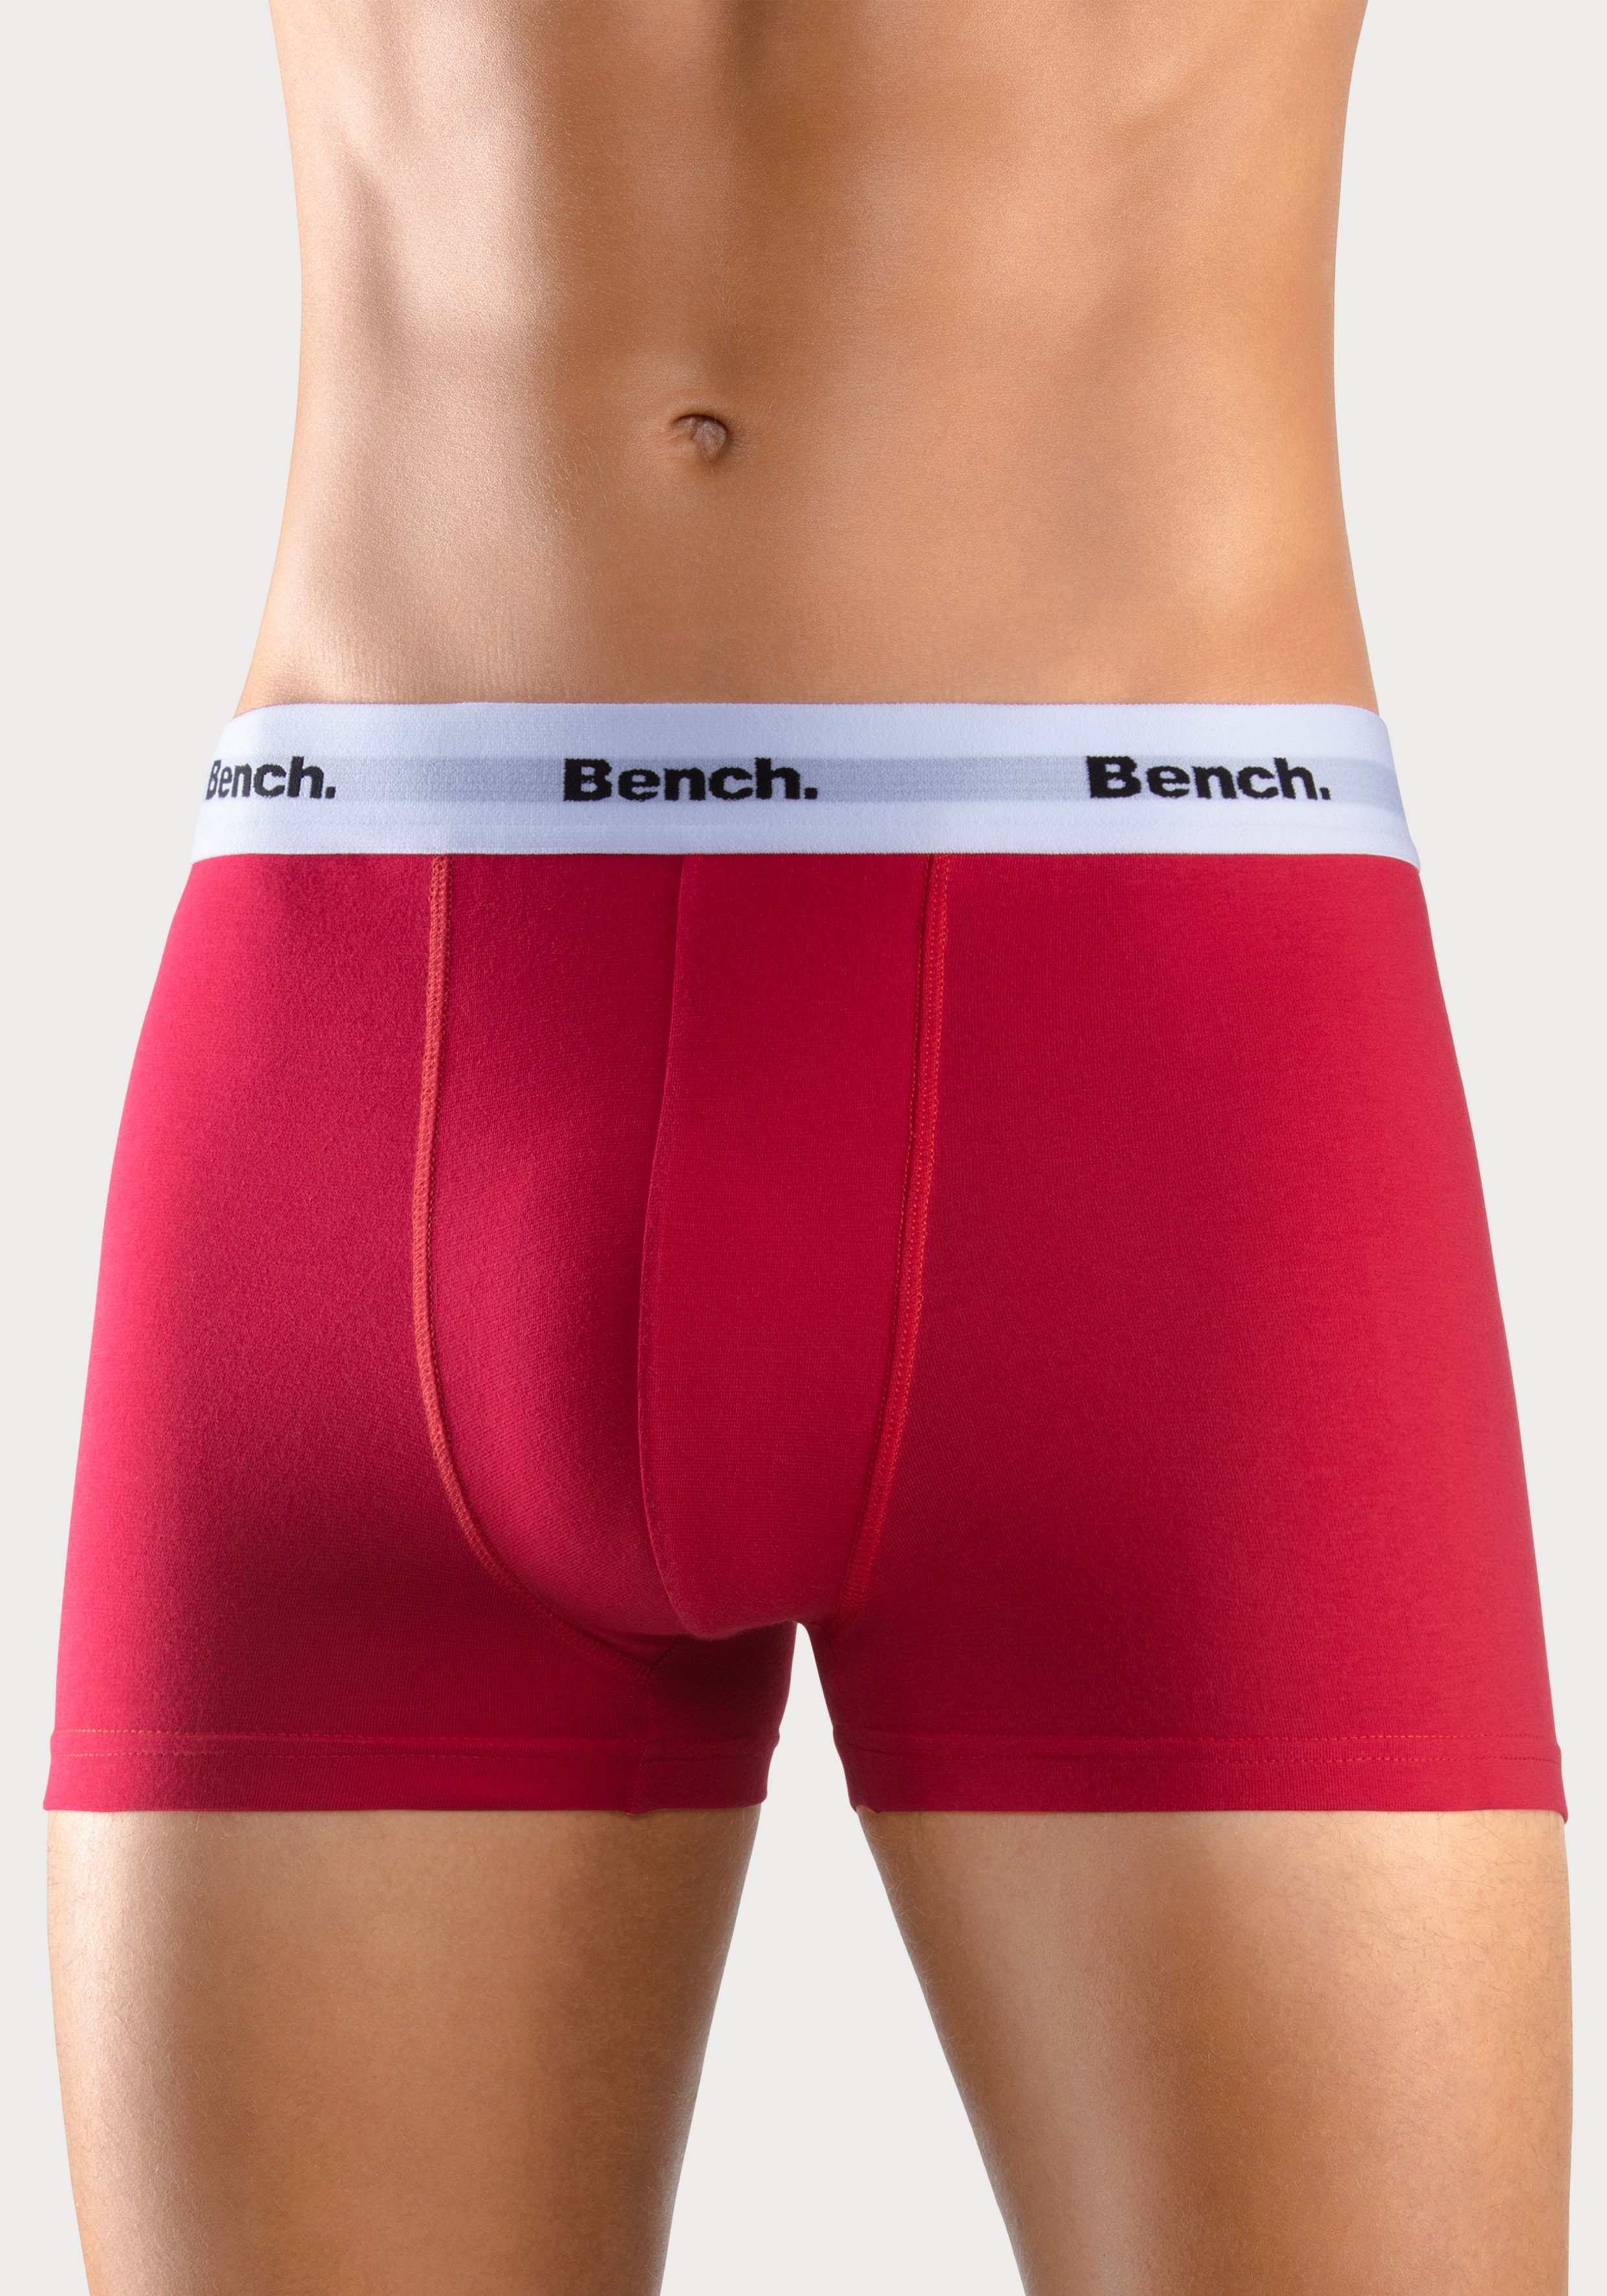 Bench. Boxer (Packung, 4-St) grau-meliert, rot, royalblau, Bund schwarz mit kontrastfarbigem